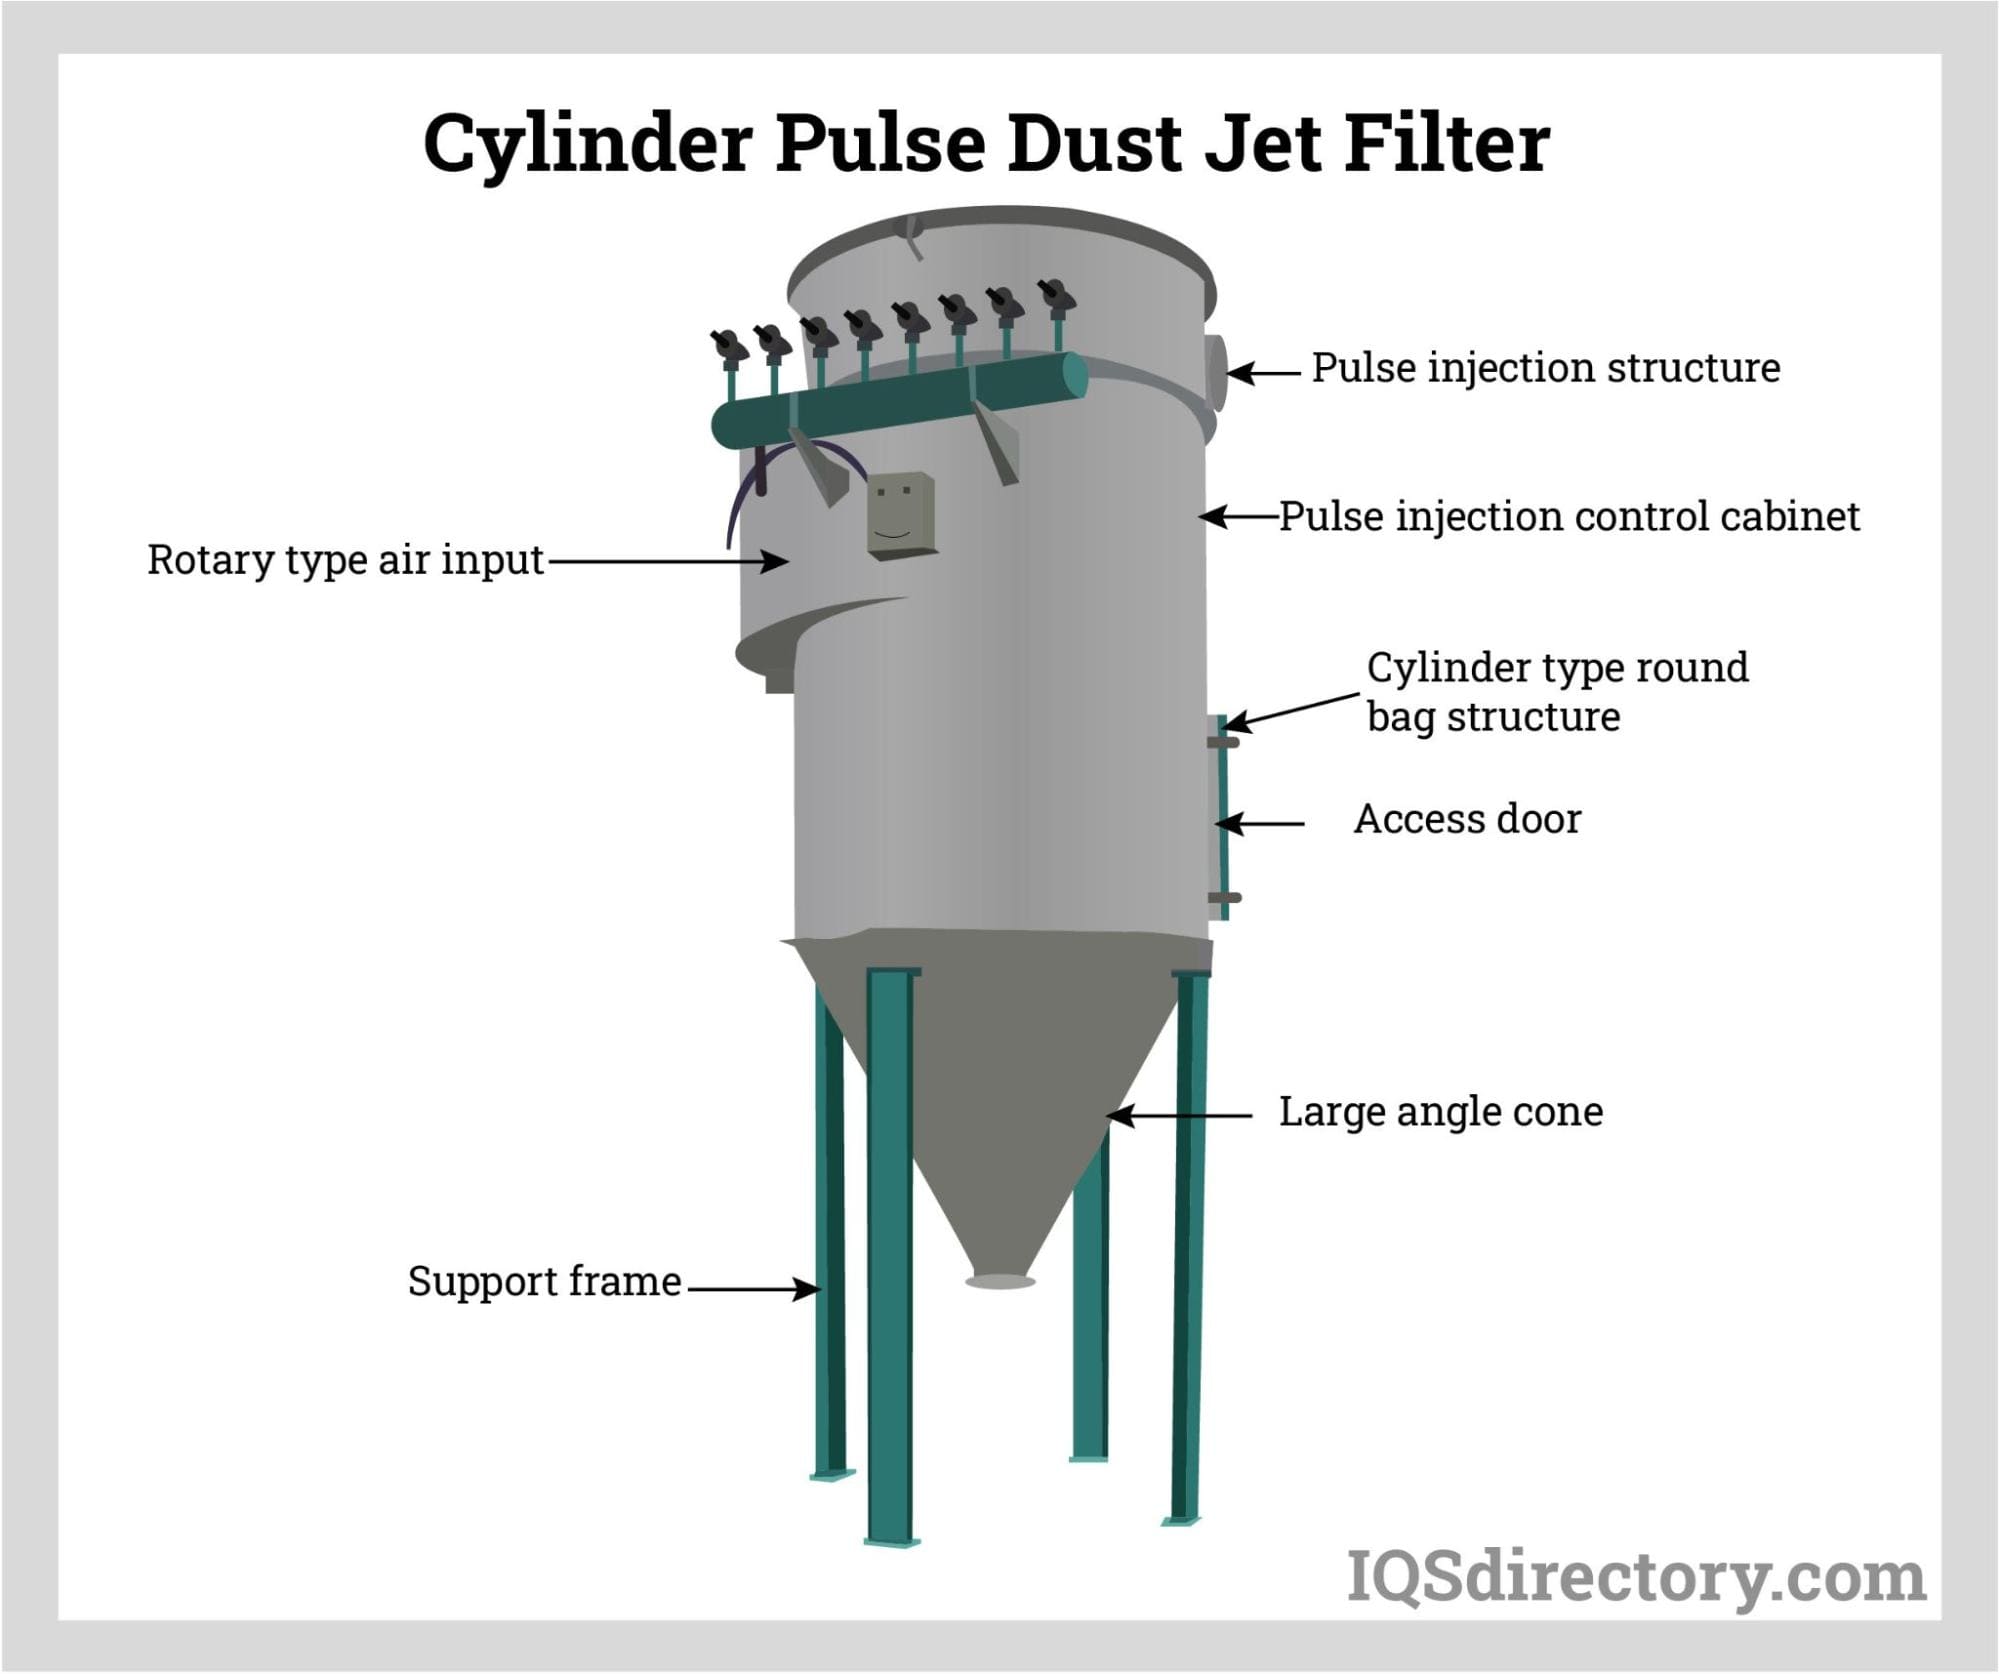 Cylinder Pulse Dust Jet Filter